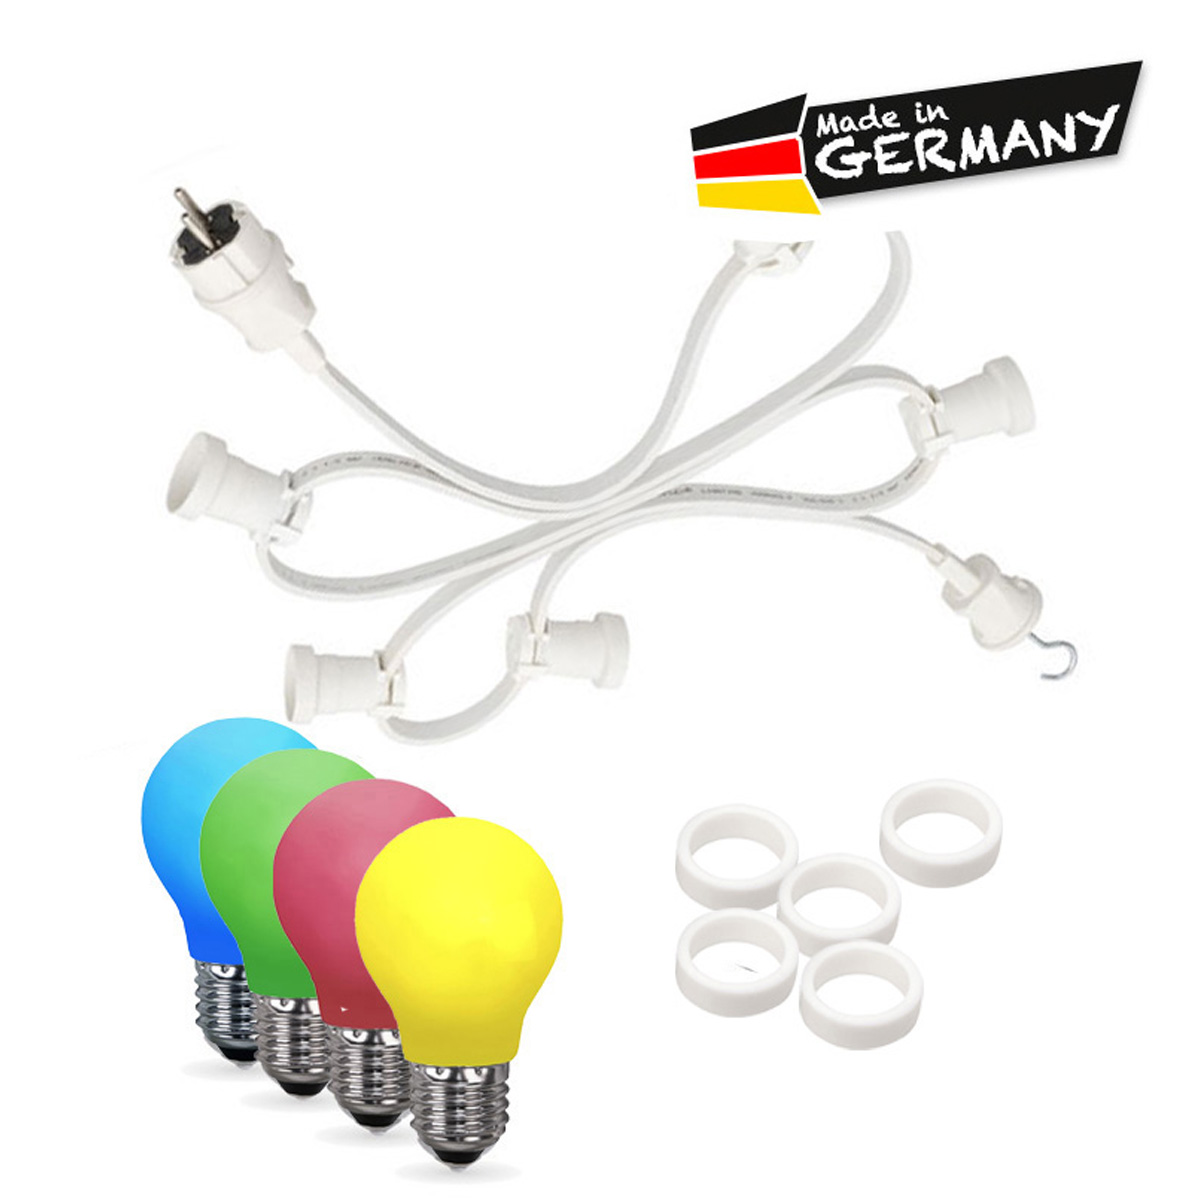 Illu-/Partylichterkette 40m | Außenlichterkette weiß | Made in Germany | 60 x bunte LED Tropfenlampe